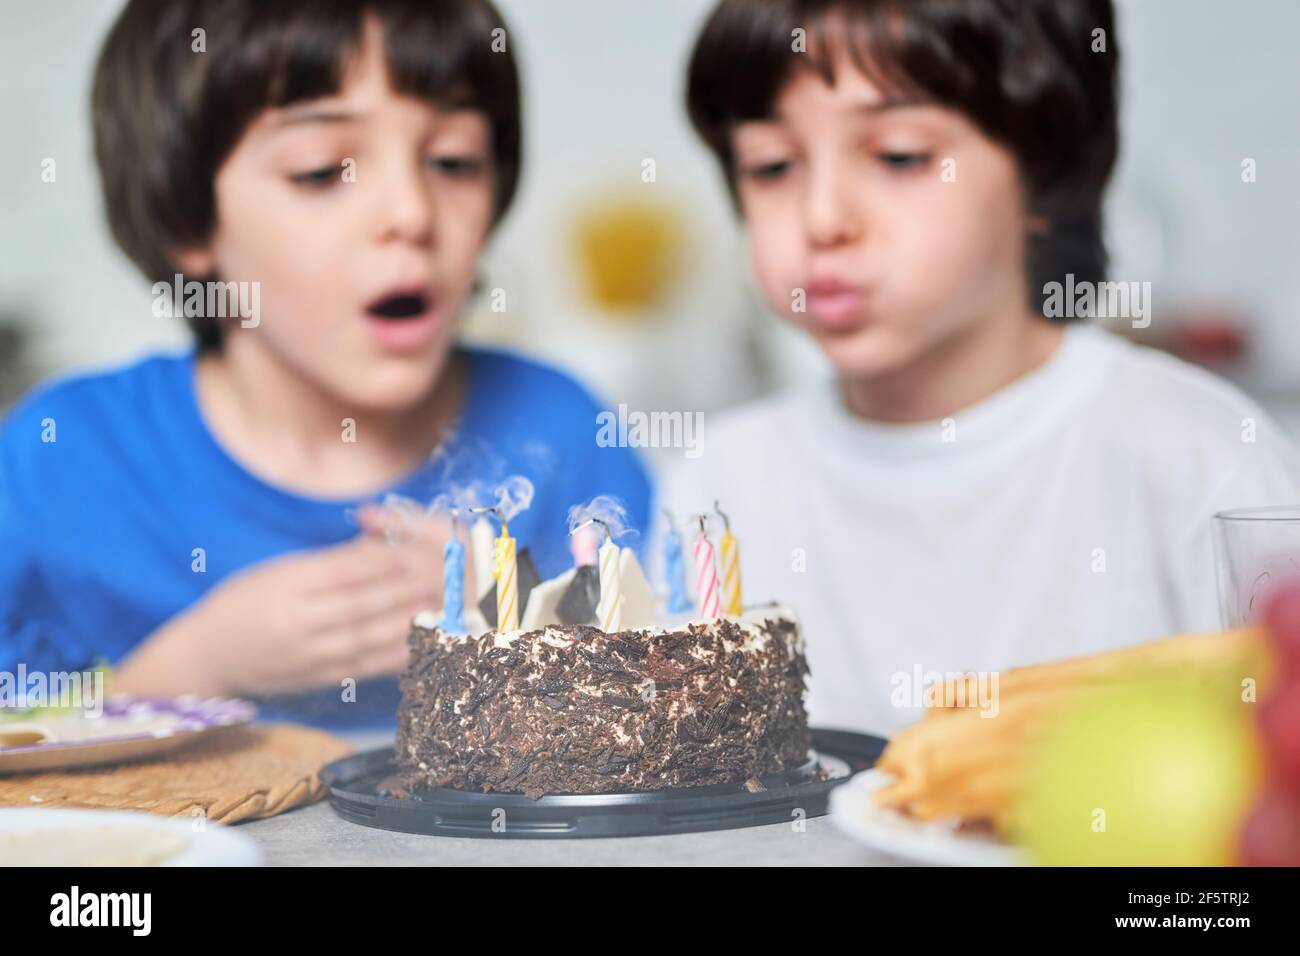 Geburtstagsjungen. Zwei kleine lateinische Jungen blasen Kerzen auf einem Geburtstagskuchen, während sie zusammen mit der Familie zu Hause Geburtstag feiern Stockfoto